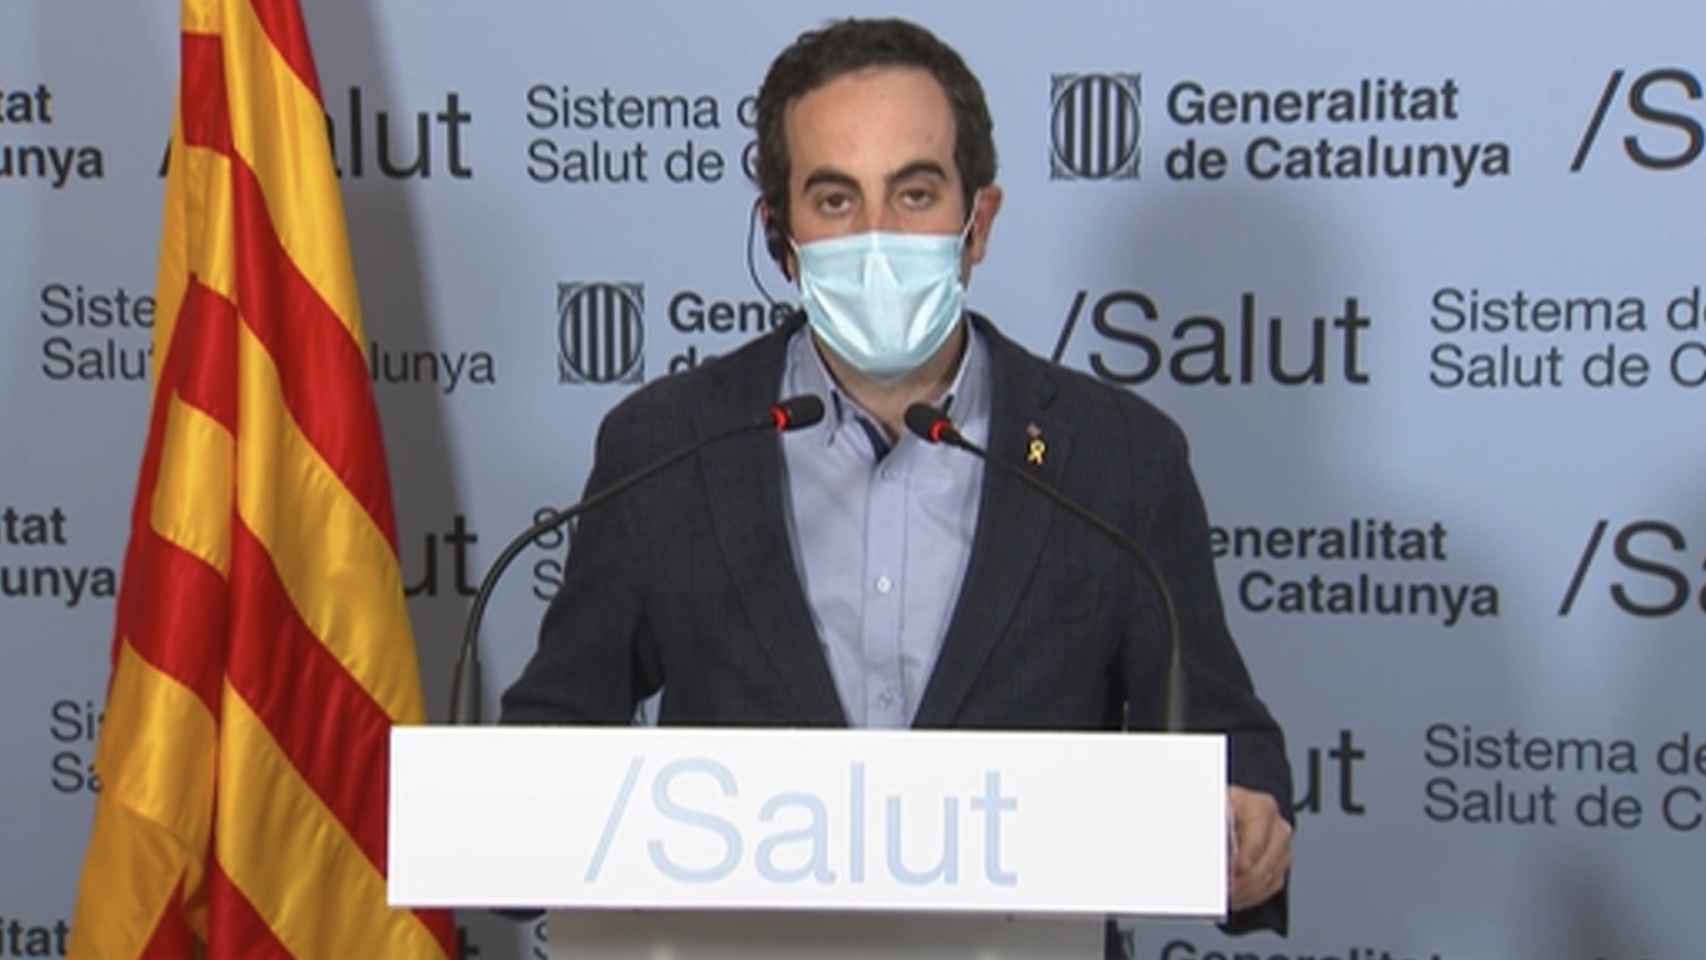 El secretario de Salut de la Generalitat, Marc Ramentol, anuncia que se prorrogan las restricciones vigentes en Cataluña / 324